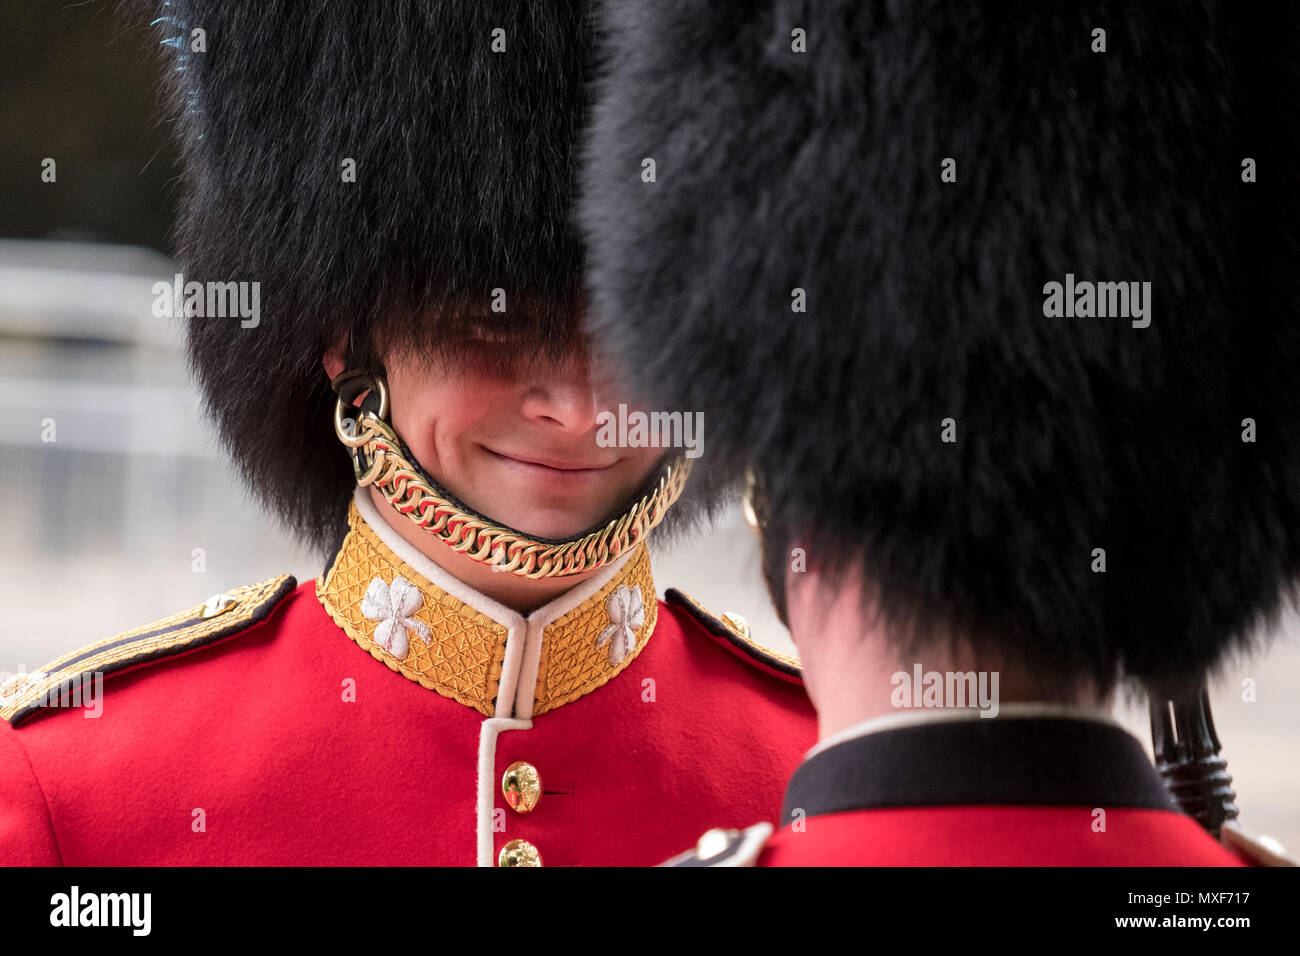 Les soldats de la Garde royale portant l'uniforme rouge et noir et son  bonnet chapeaux partageant une blague pendant la parade la parade militaire  de couleur, Londres UK Photo Stock - Alamy